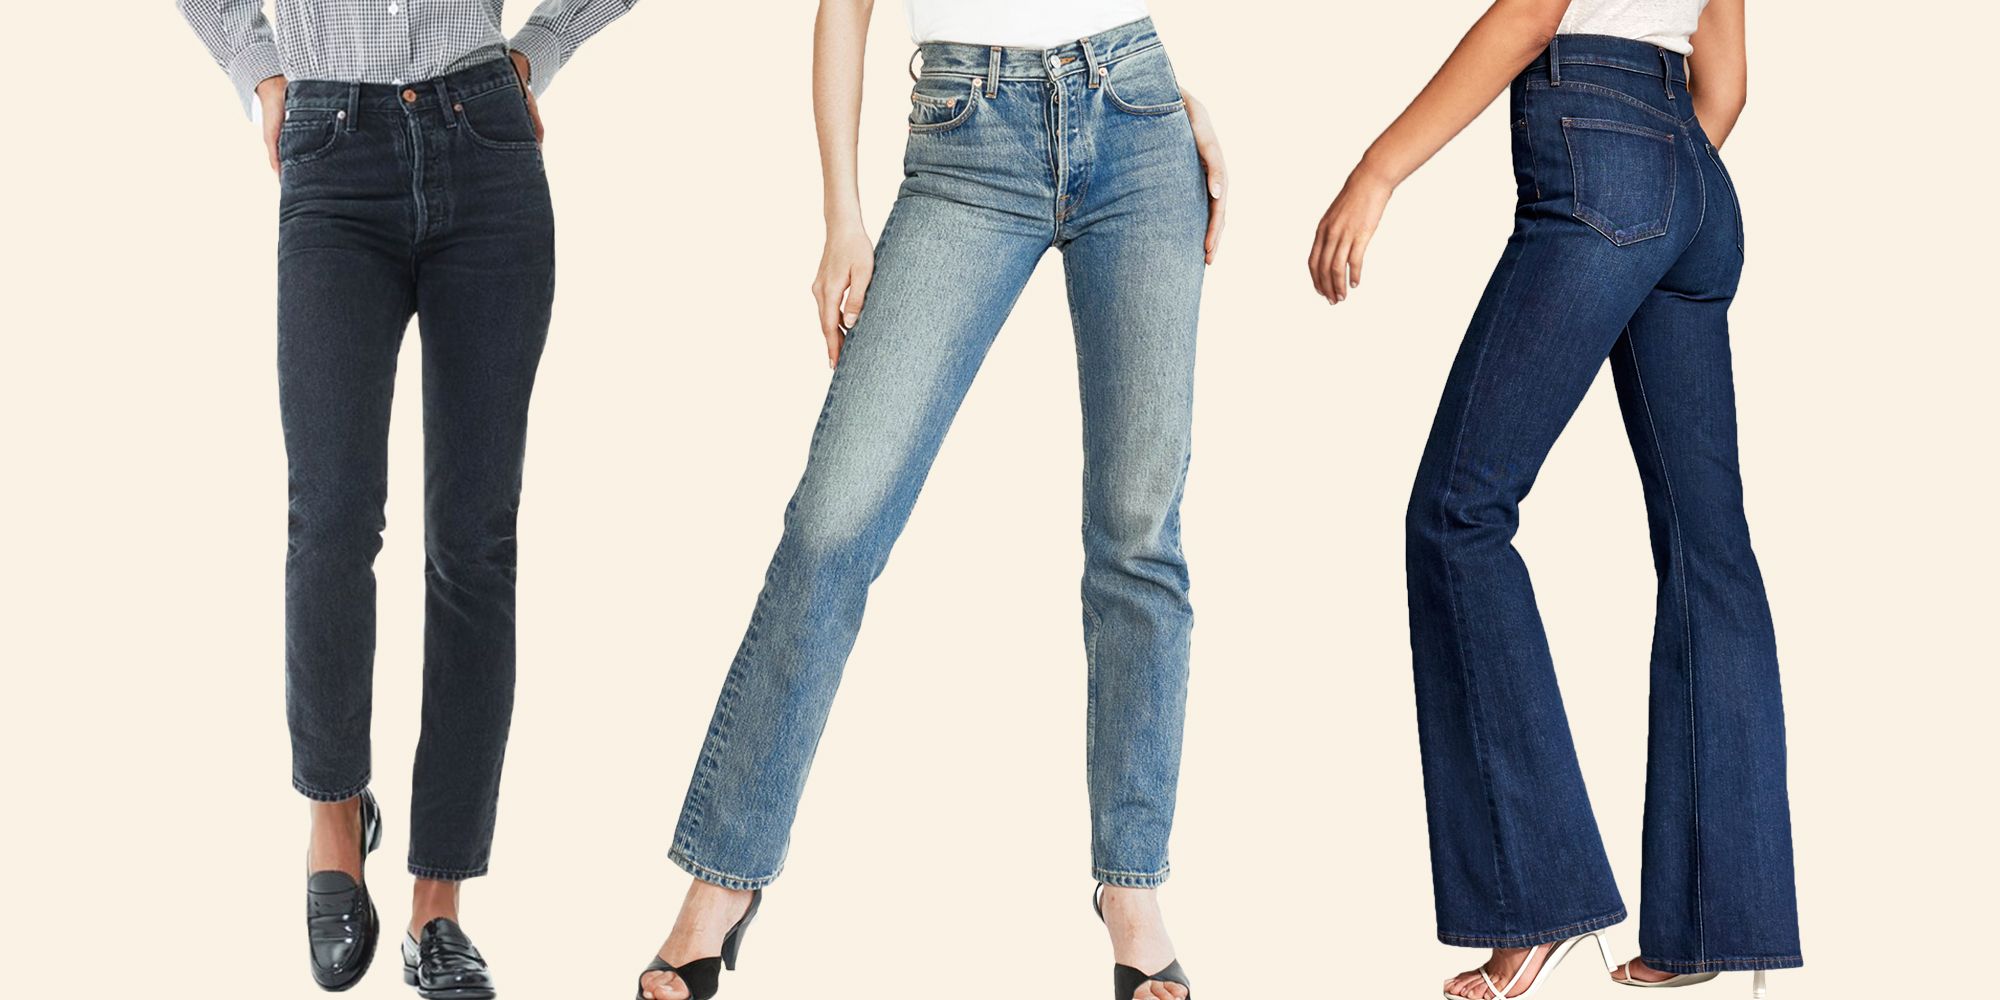 tall girl high waisted jeans